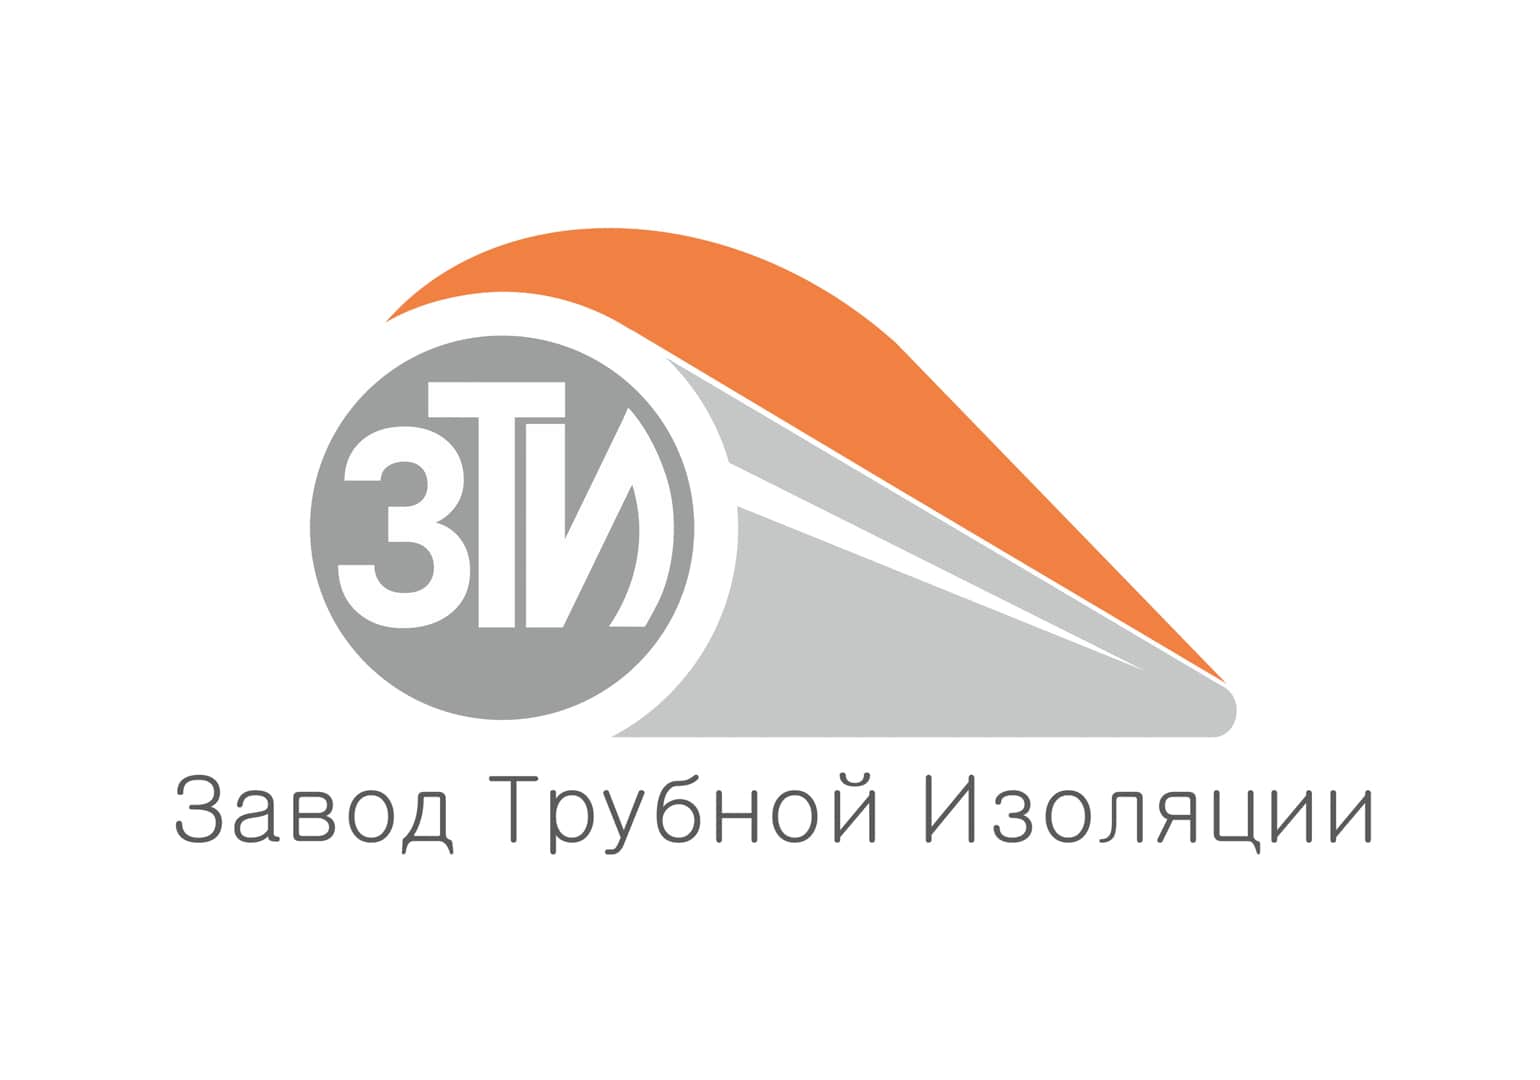 Логотип для Завода трубной изоляции